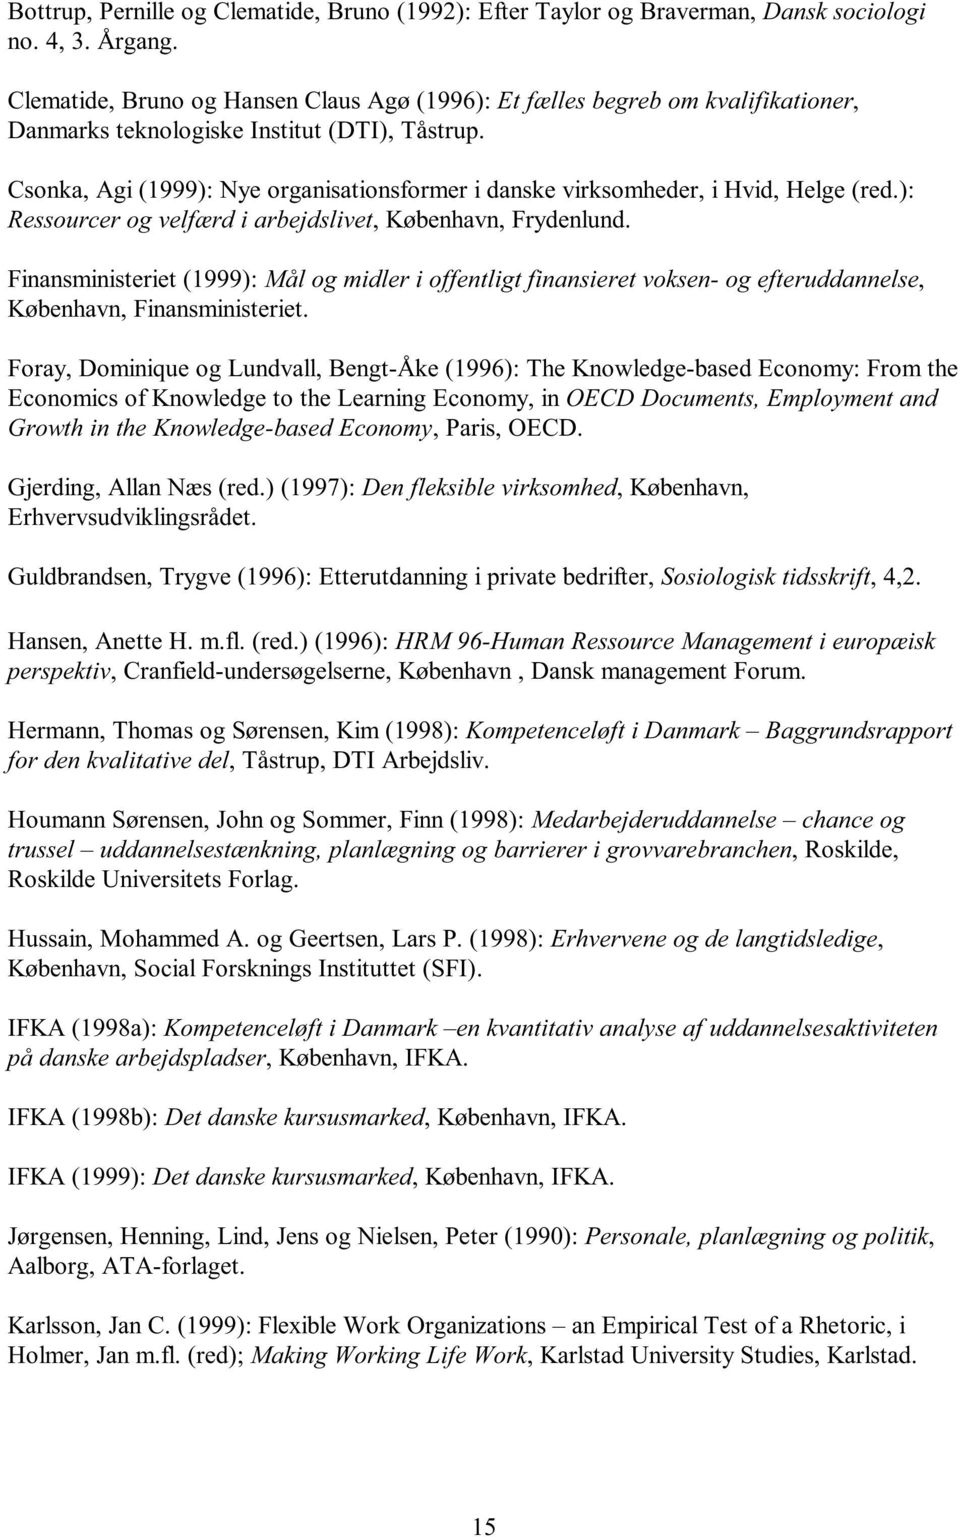 Csonka, Agi (1999): Nye organisationsformer i danske virksomheder, i Hvid, Helge (red.): Ressourcer og velfærd i arbejdslivet, København, Frydenlund.